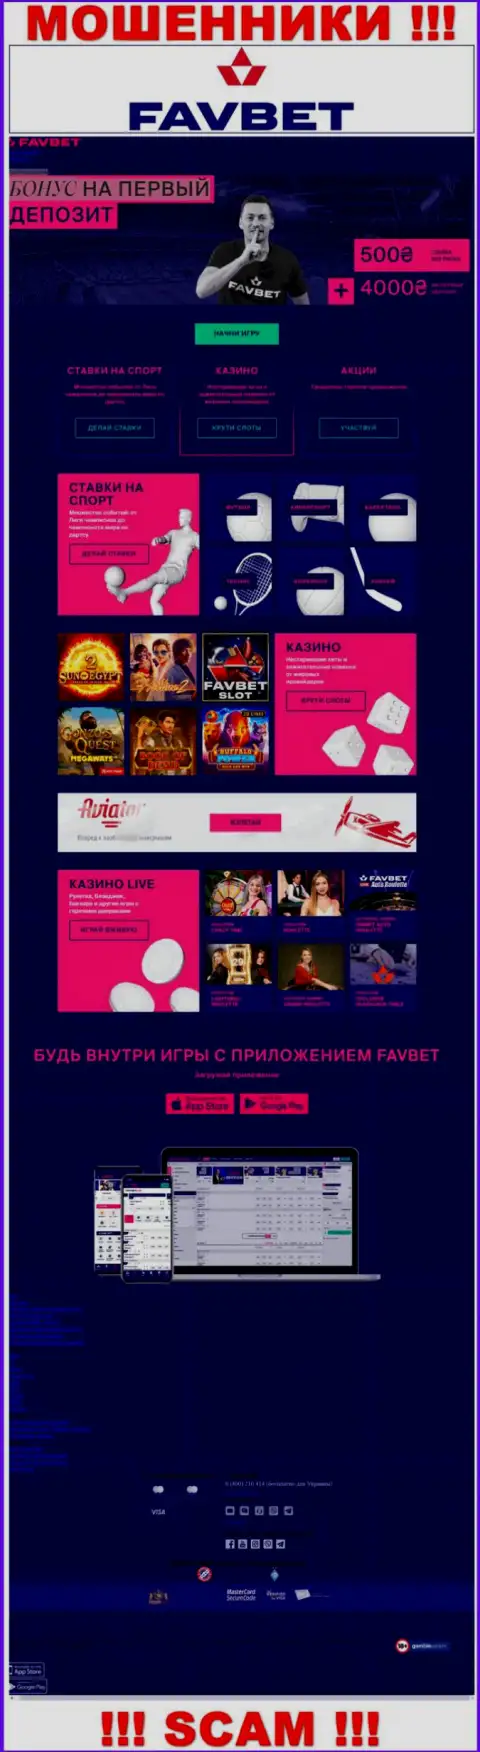 Фейковая информация от аферистов FavBet на их официальном сайте ФавБет Ком